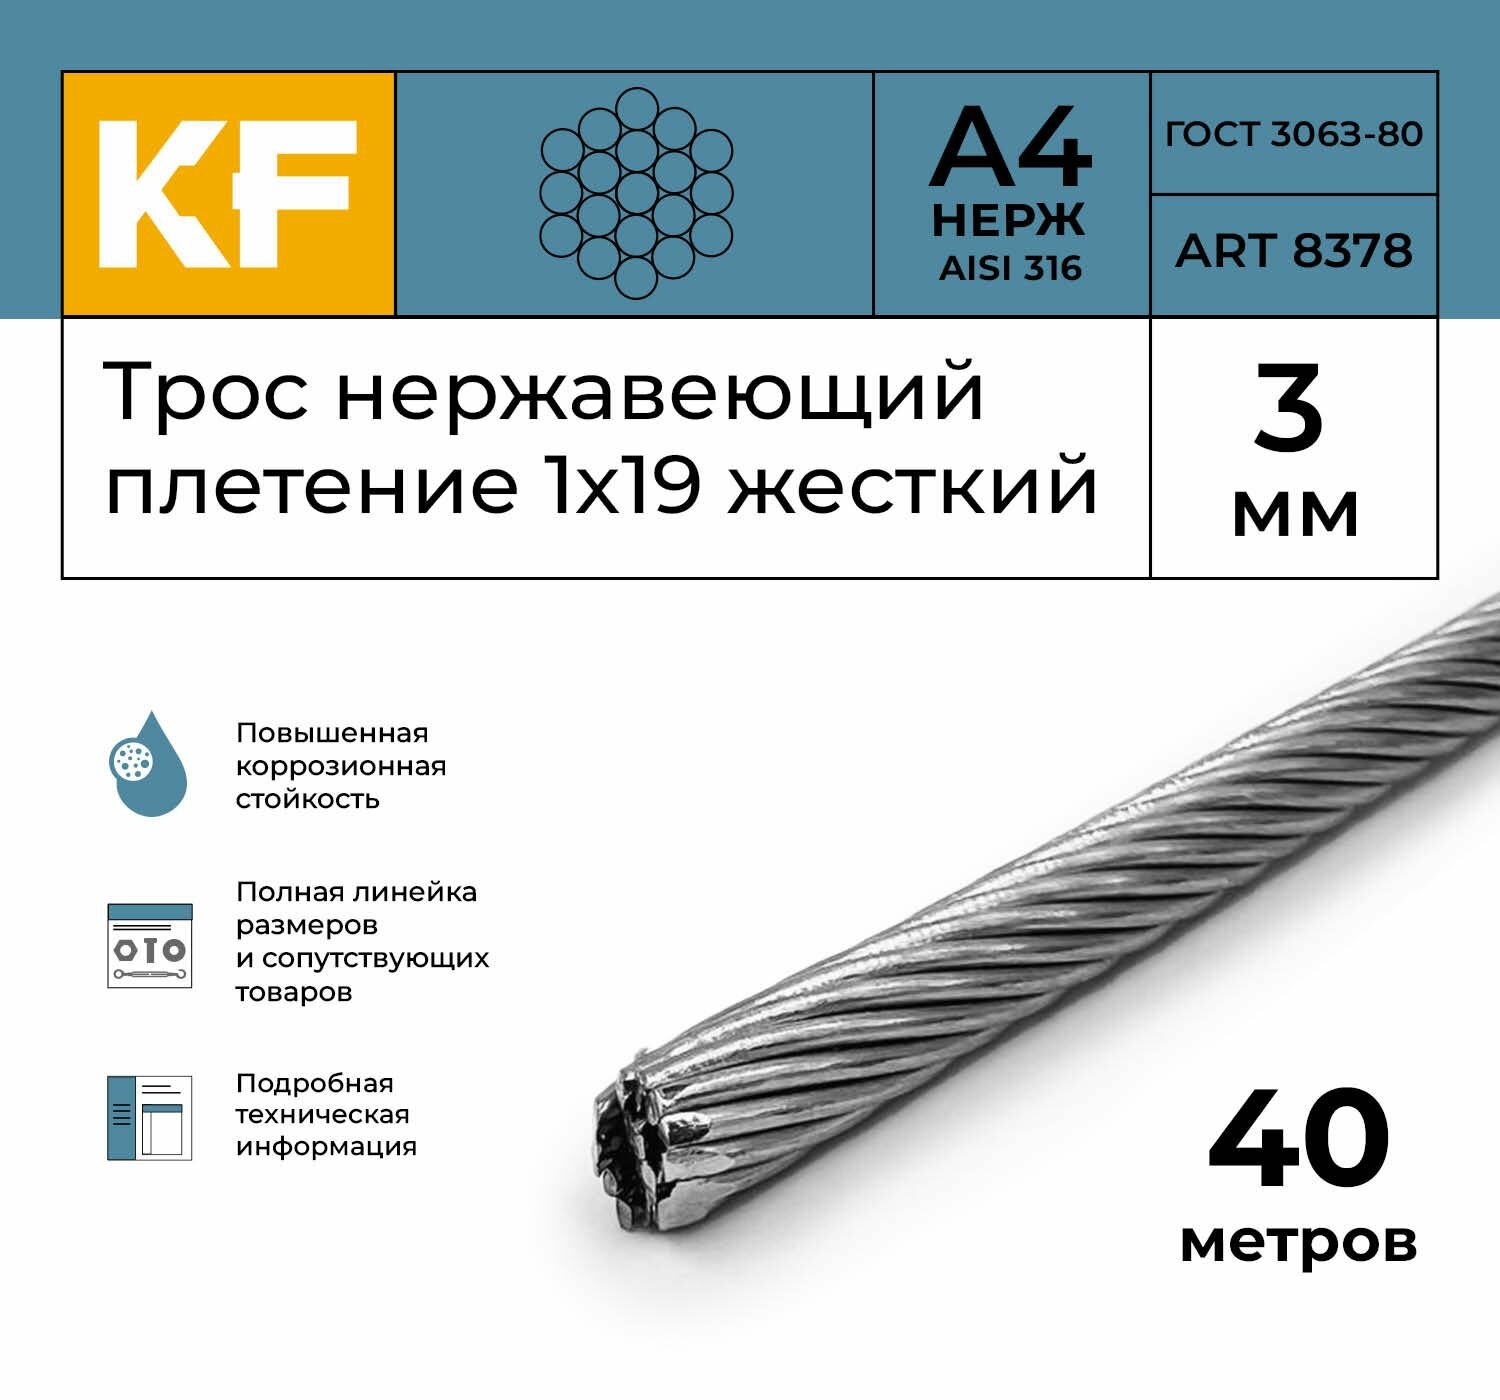 Трос нержавеющий 3 мм сталь А4 плетение 1х19 жесткий 40 метров